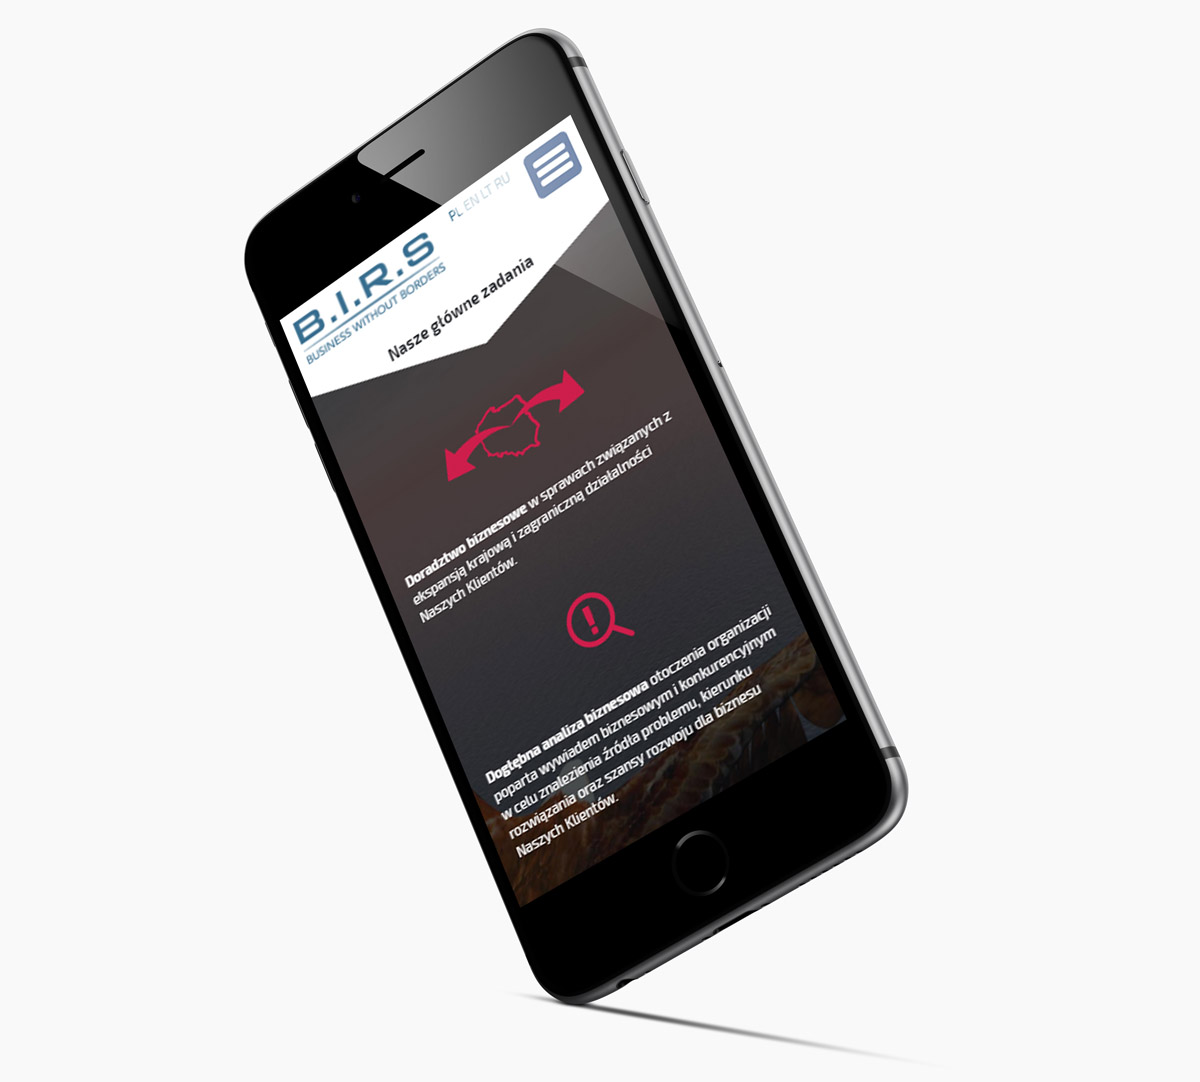 BIRS - mobilna, responsywna strona internetowa z RWD